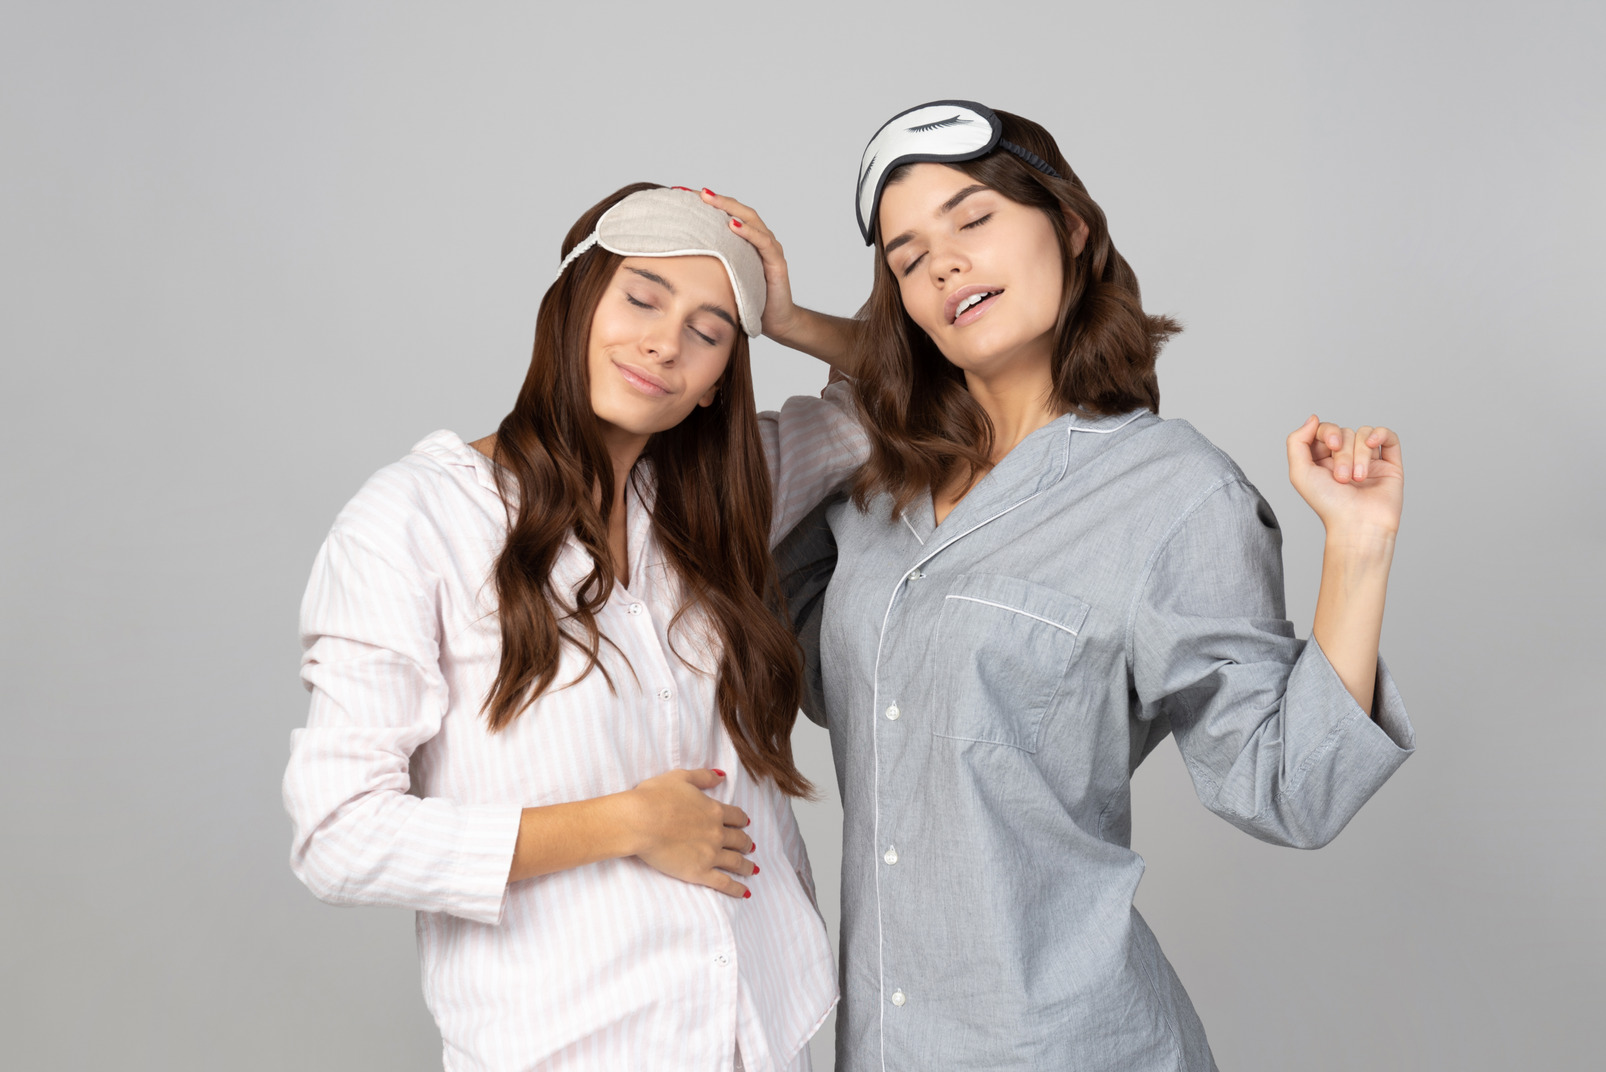 Sleepy young women wearing sleep masks and pyjamas